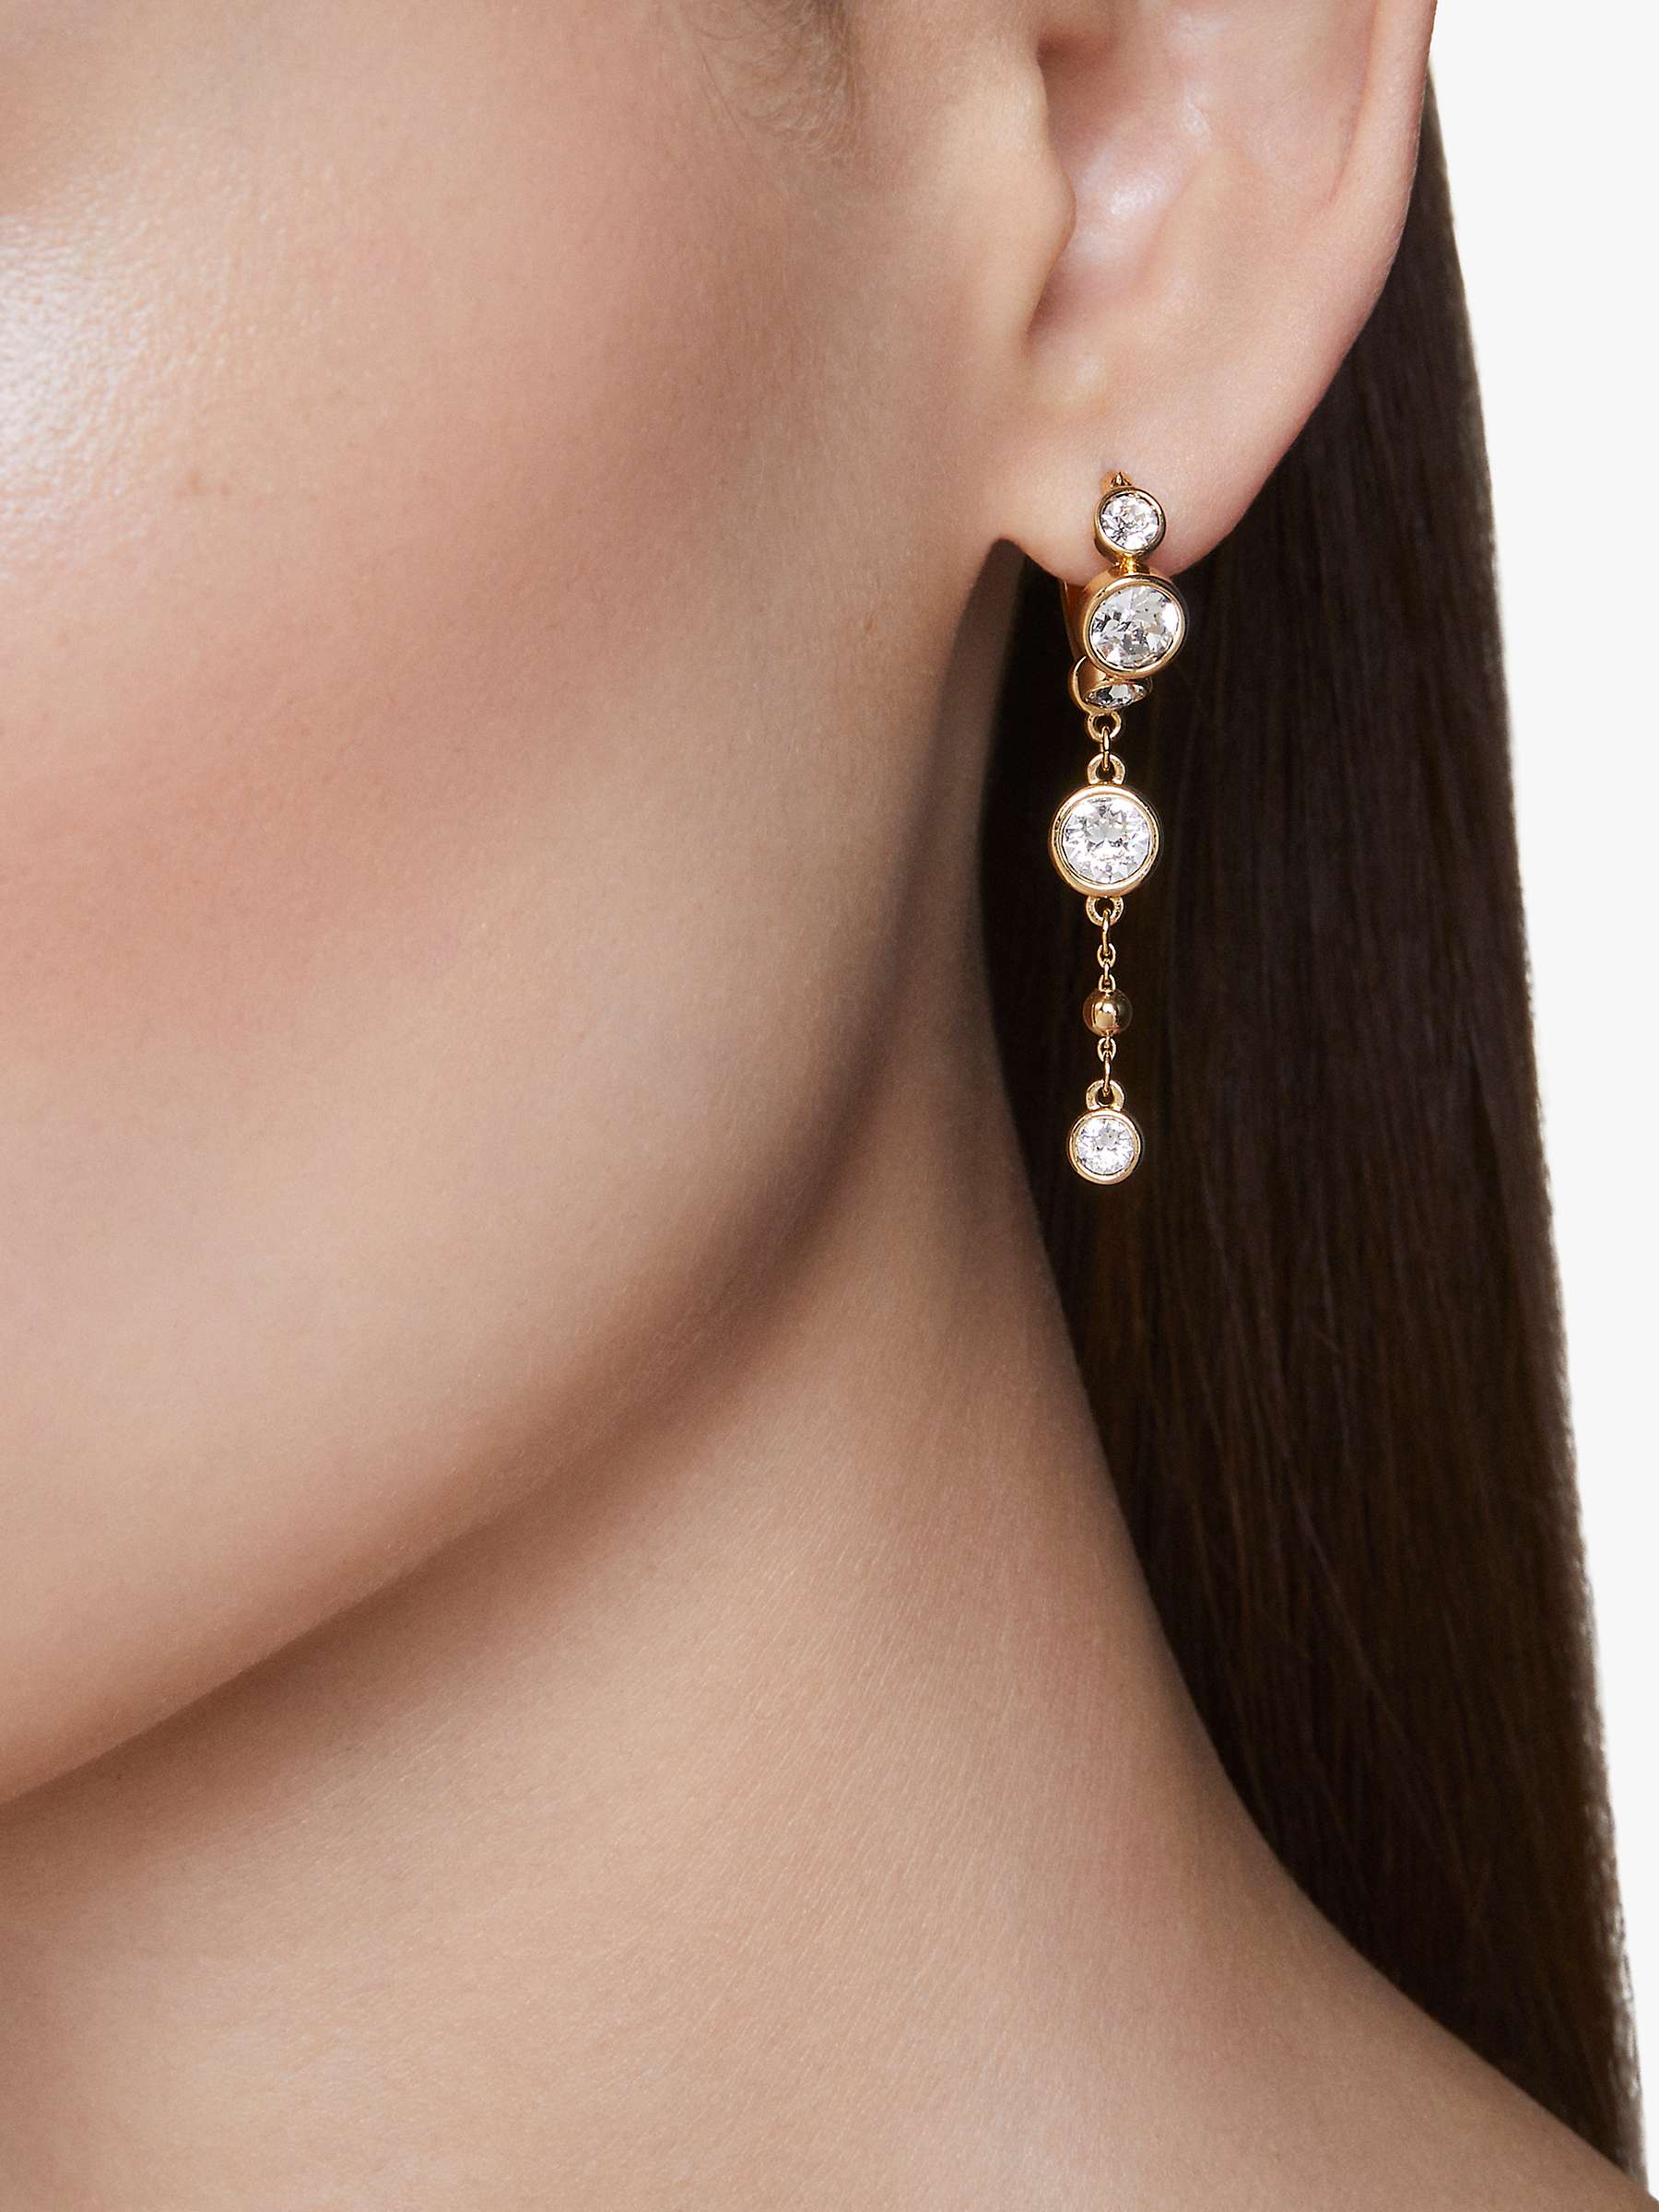 Buy Swarovski Crystal Hoop and Chain Earrings, Gold Online at johnlewis.com